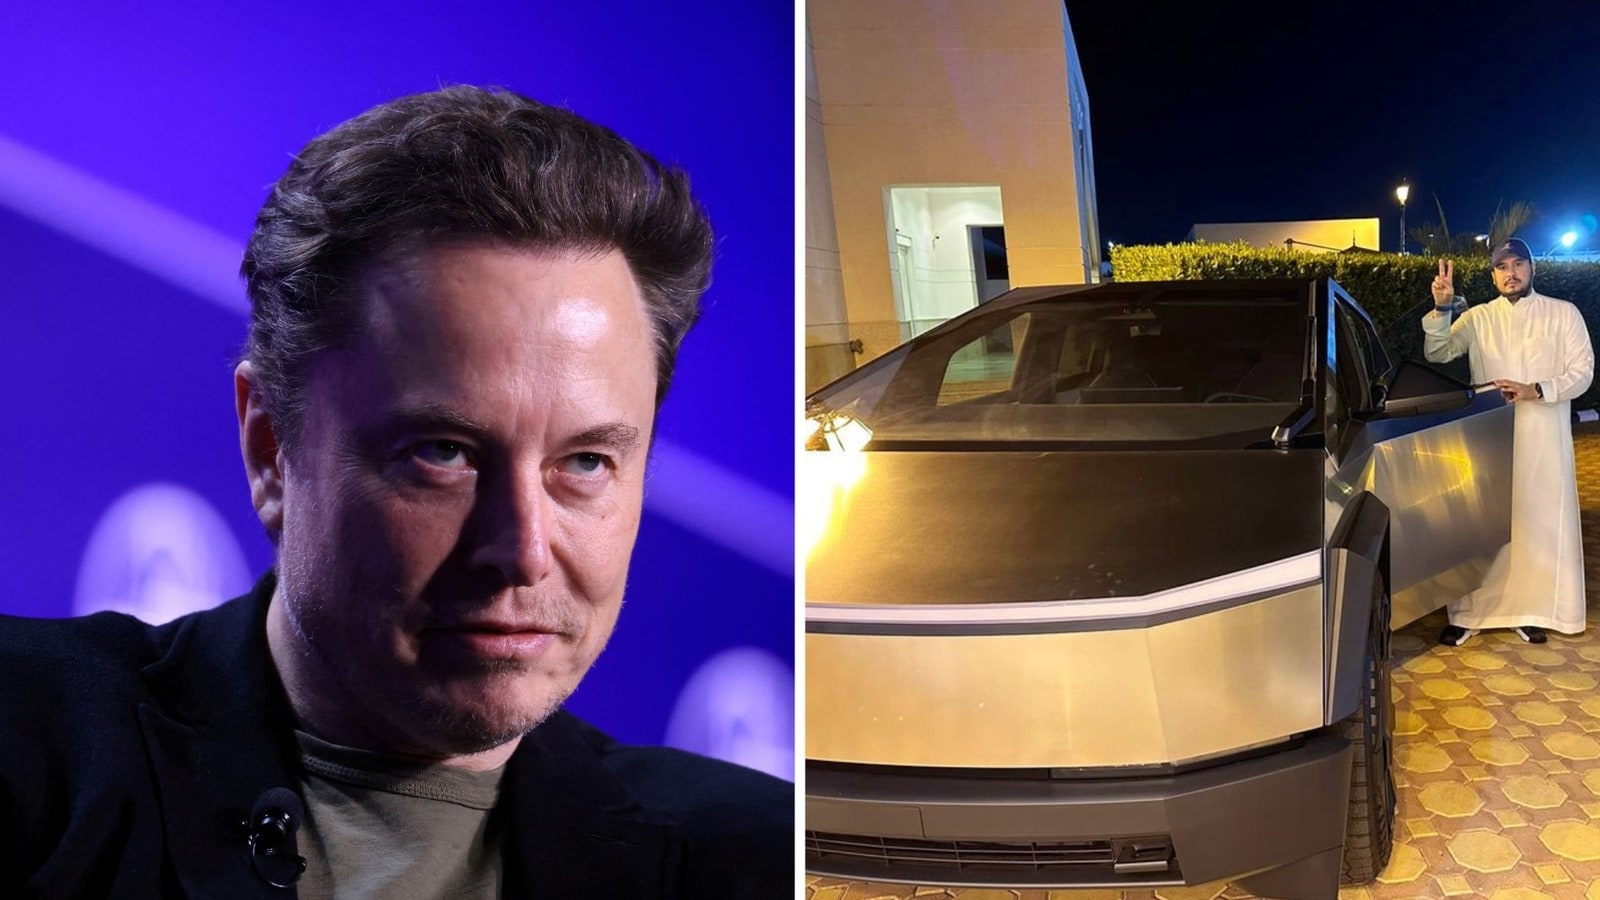 Elon Musk reaguje na zdjęcie saudyjskiego księcia z Cybertruckiem, odpowiedź dyrektora generalnego Tesli staje się wirusowa |  Trendy